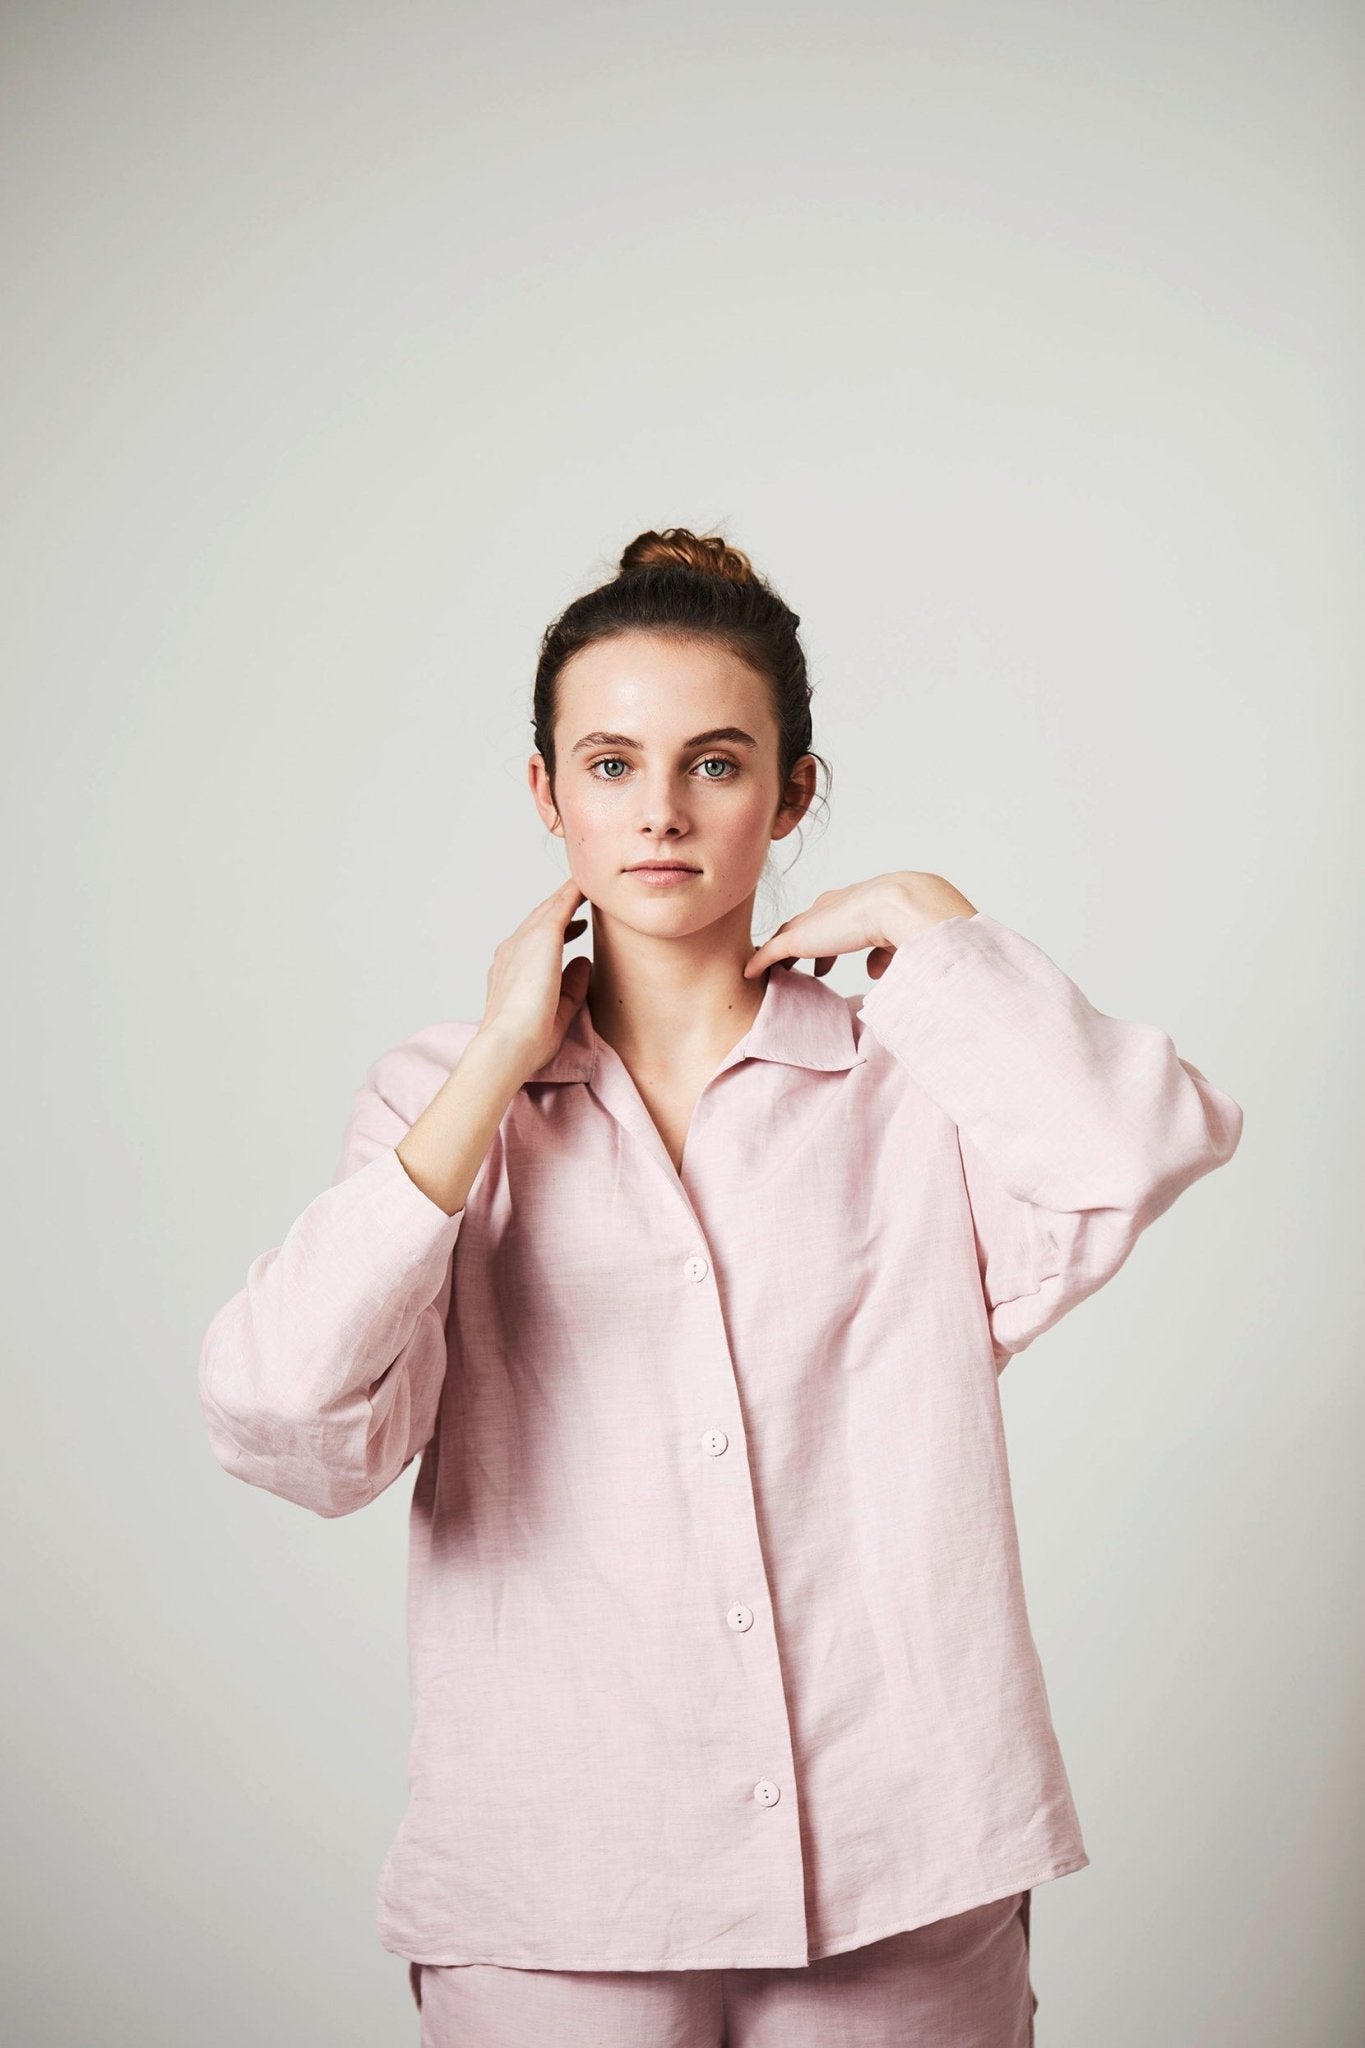 Halbleinen Homewear PJ Shirt in Rose Model Bildausschnitt 2